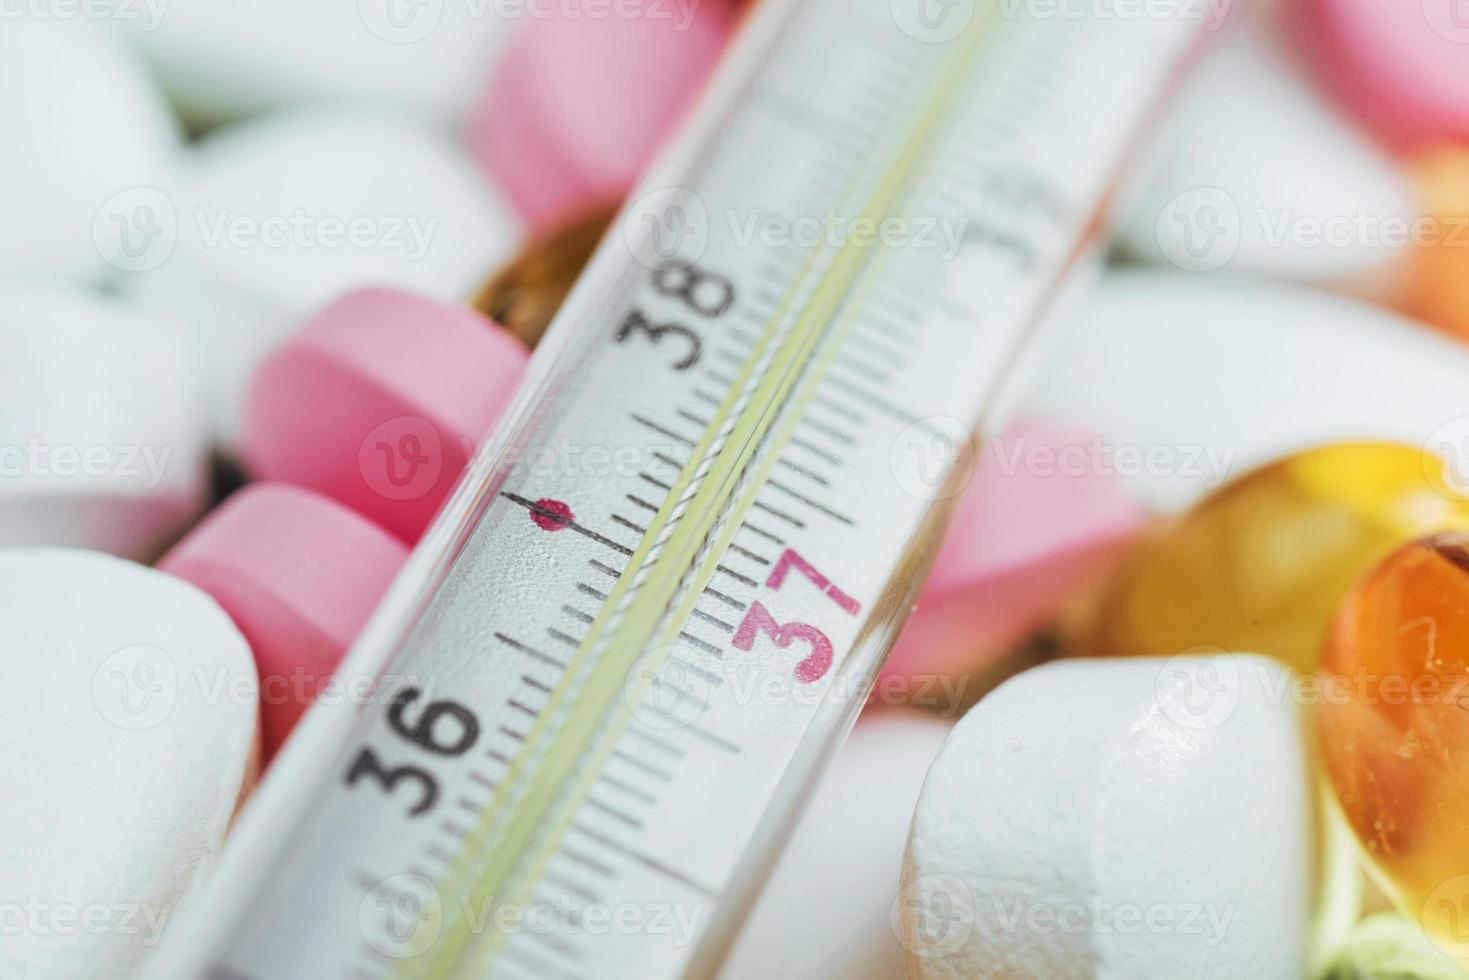 termometro e diversi tipi di pillole colorate. concetto di salute medica o farmaci foto